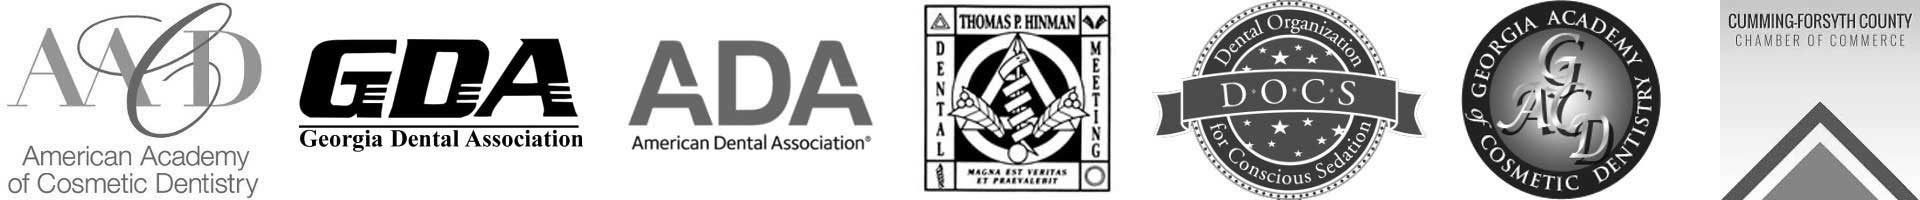 Dental Association logos